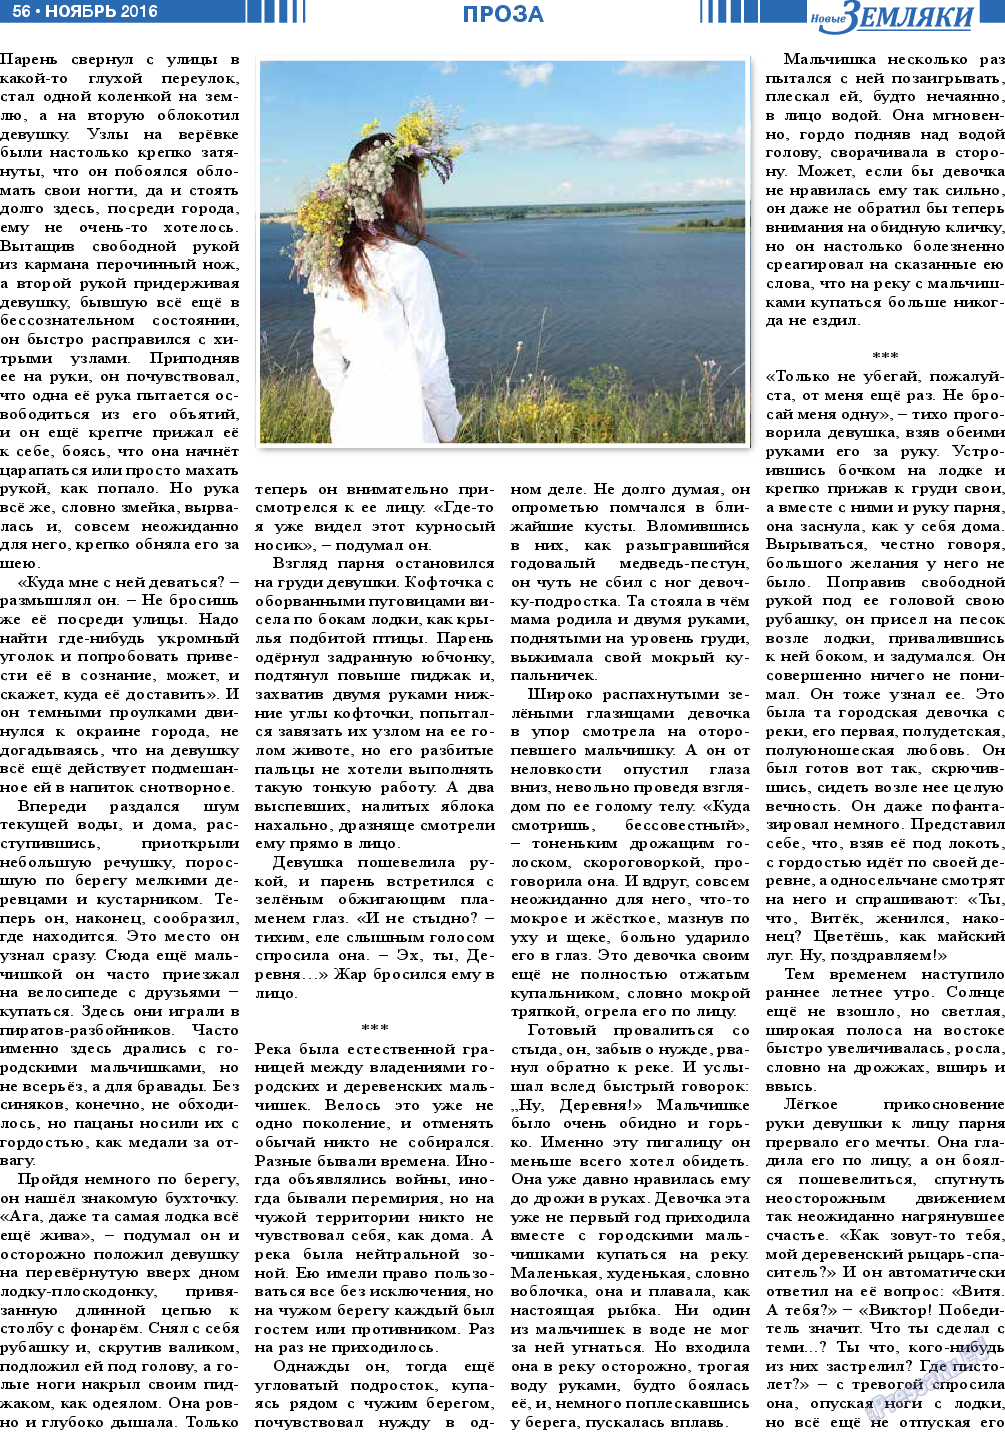 Новые Земляки (газета). 2016 год, номер 11, стр. 56